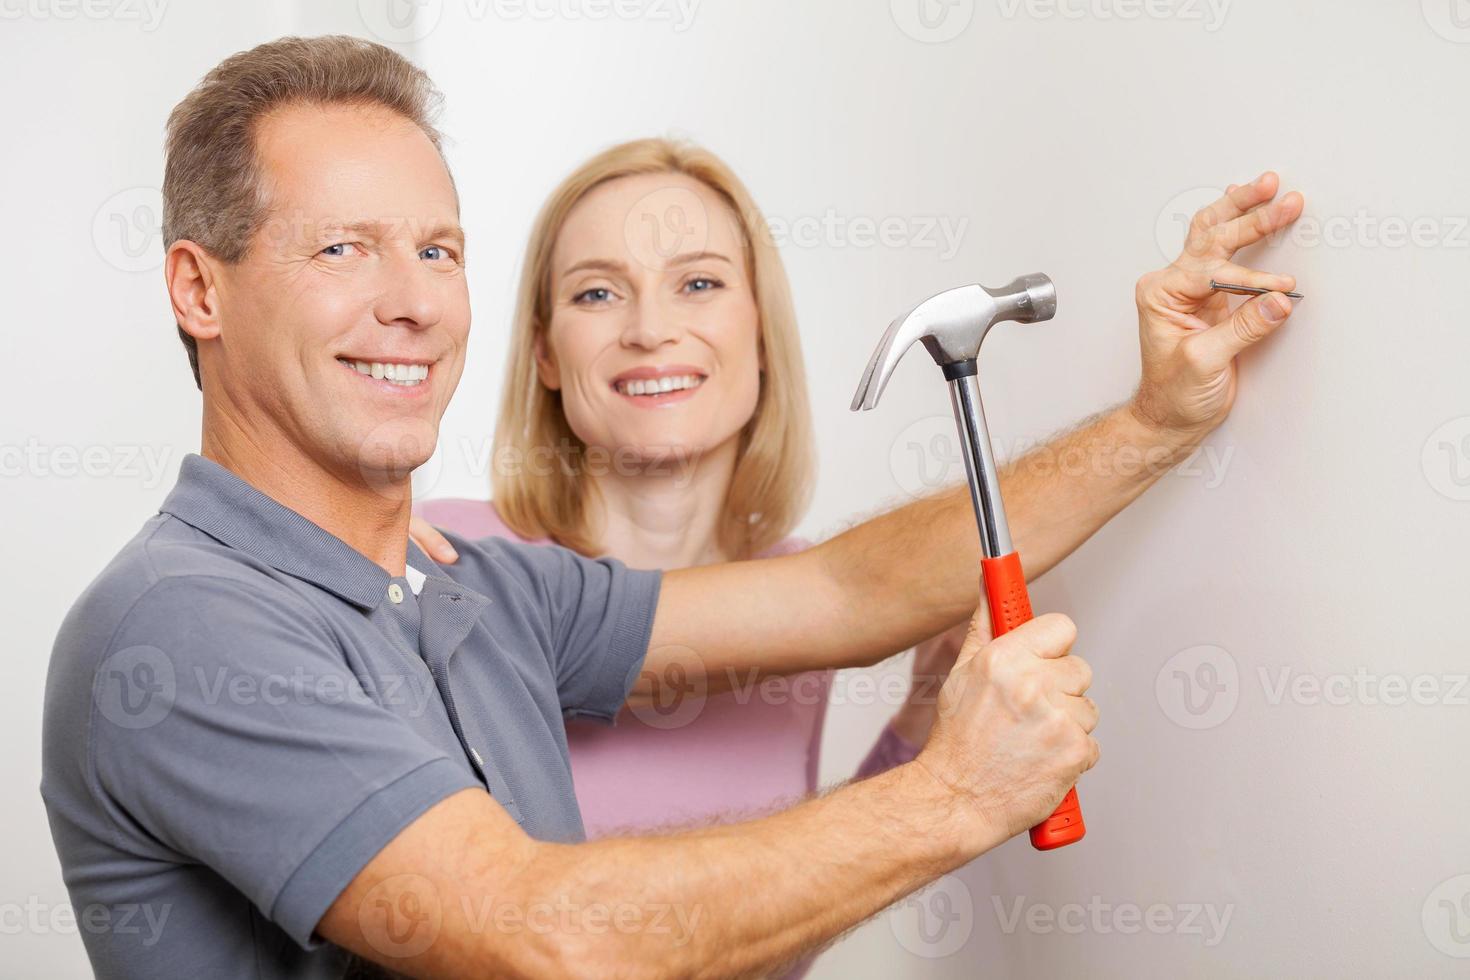 réparer la maison ensemble. joyeux homme aux cheveux gris martelant un clou et souriant tandis que sa femme se tenant près de lui photo